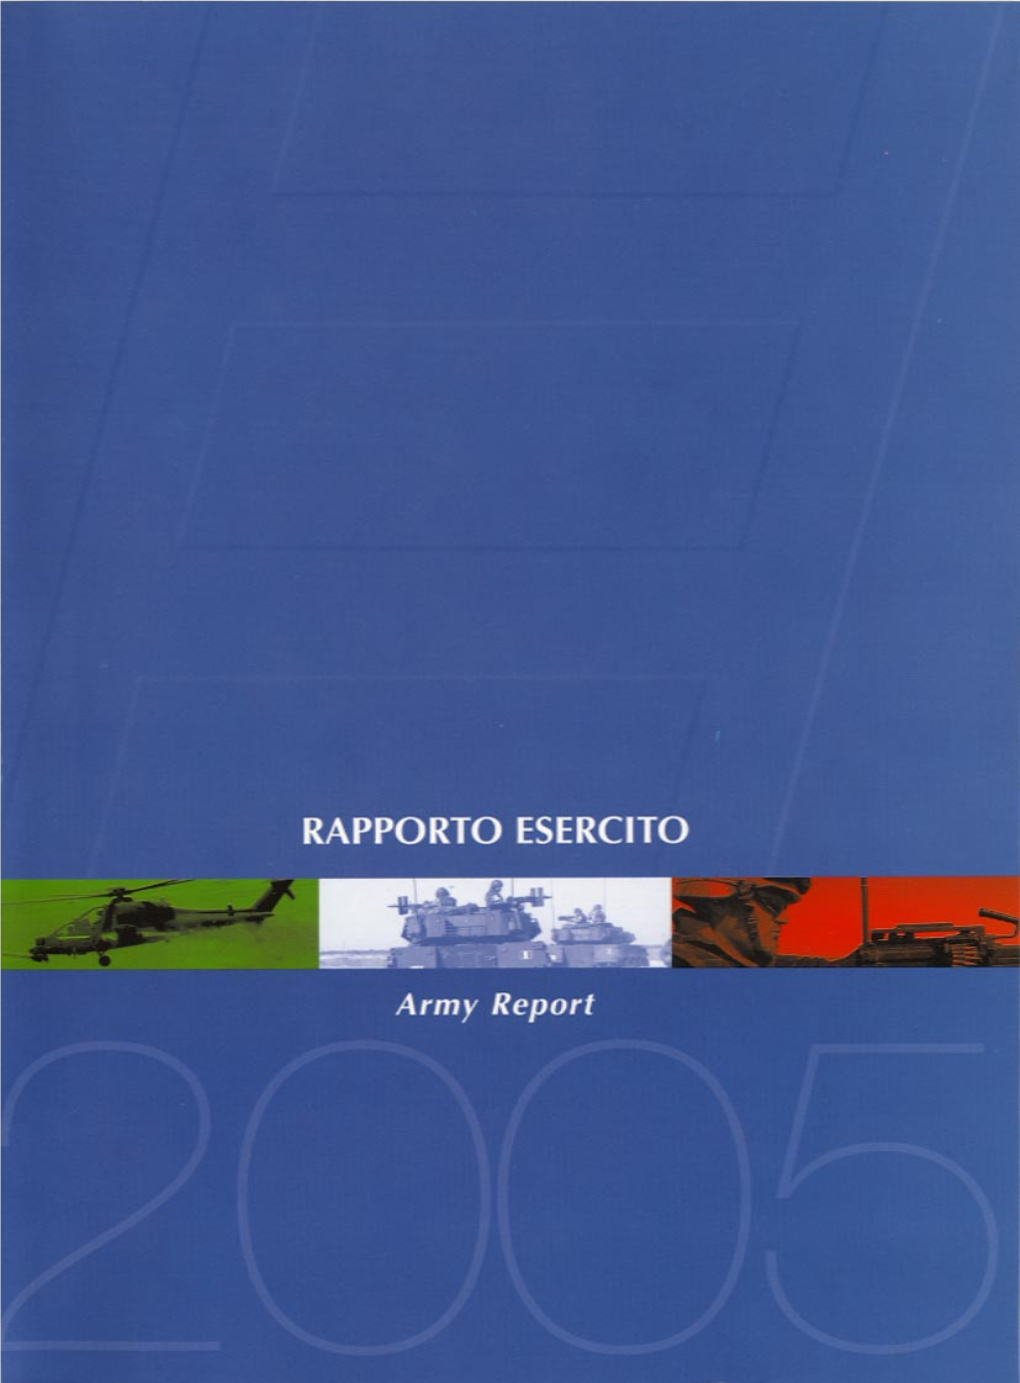 Rapporto Esercito, 2005